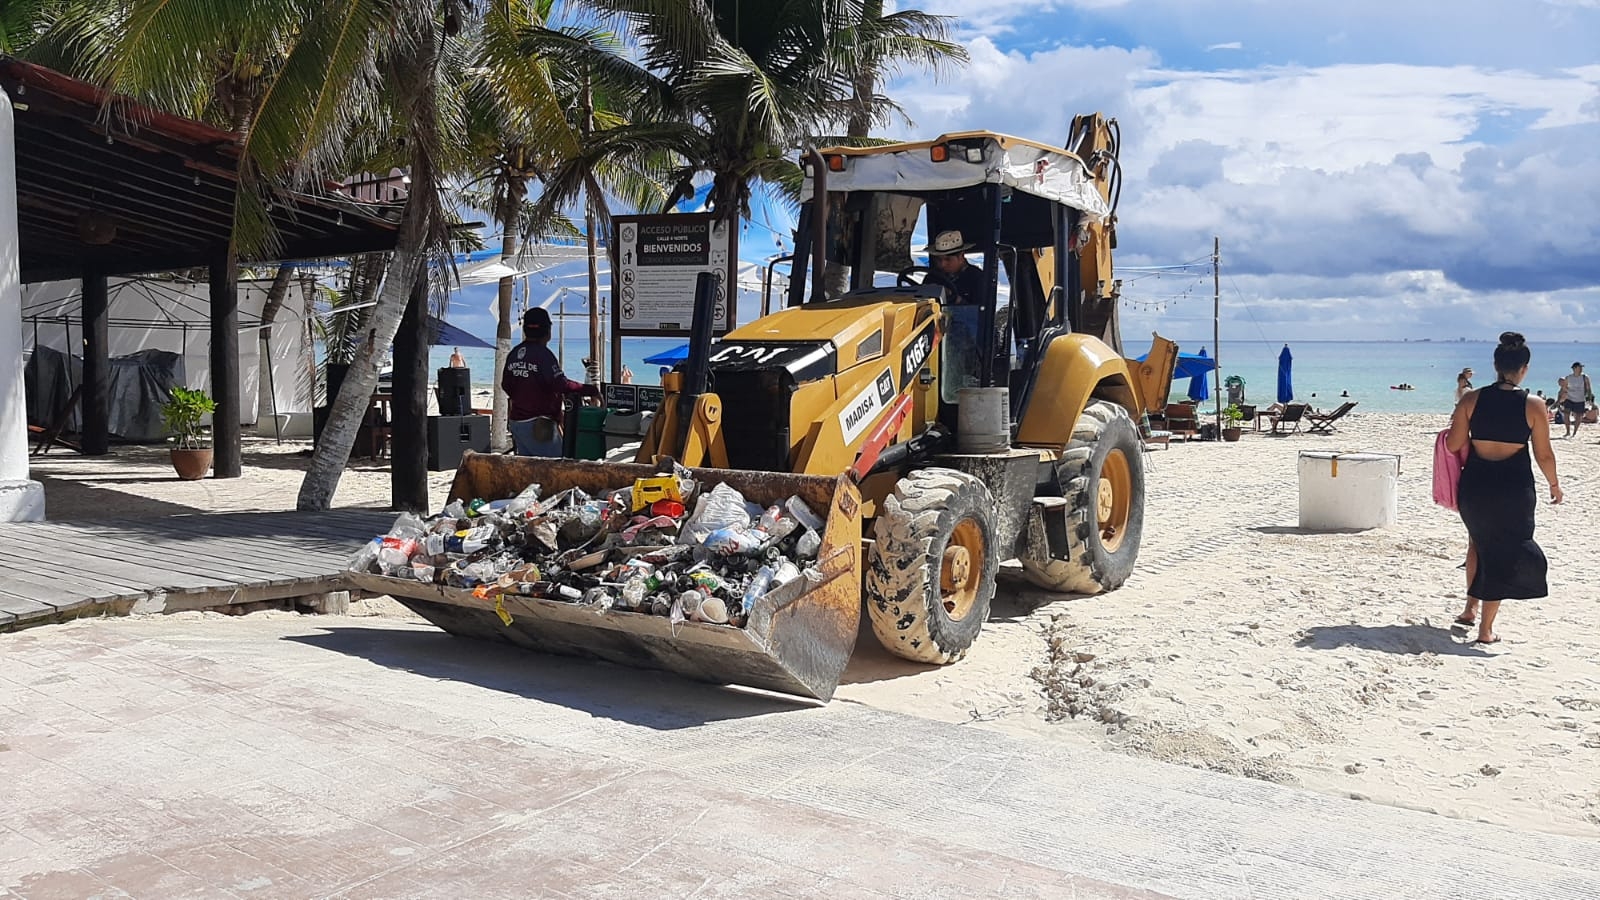 Turistas y pobladores de Playa del Carmen dejan basura en arenales del destino